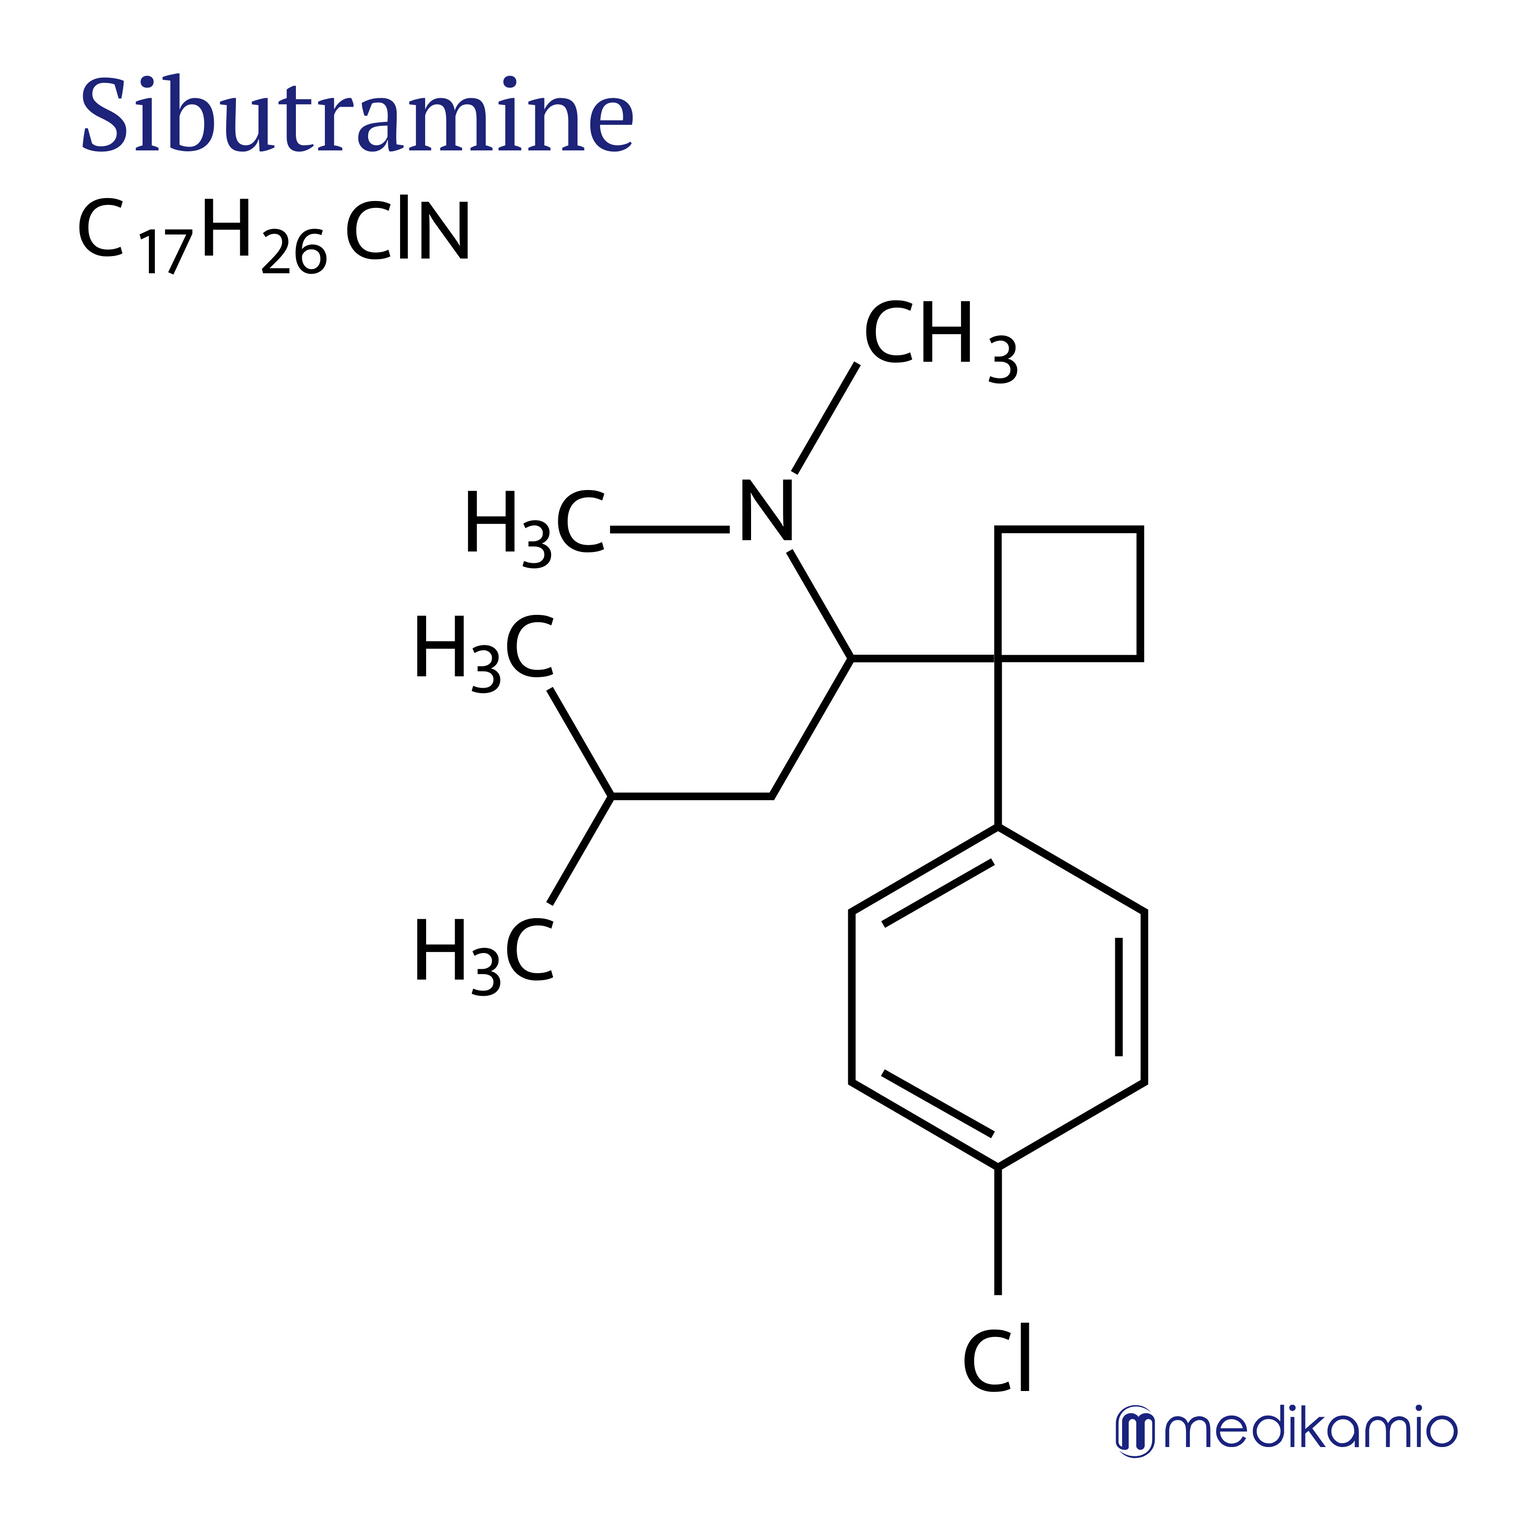 Fórmula estructural gráfica del principio activo sibutramina